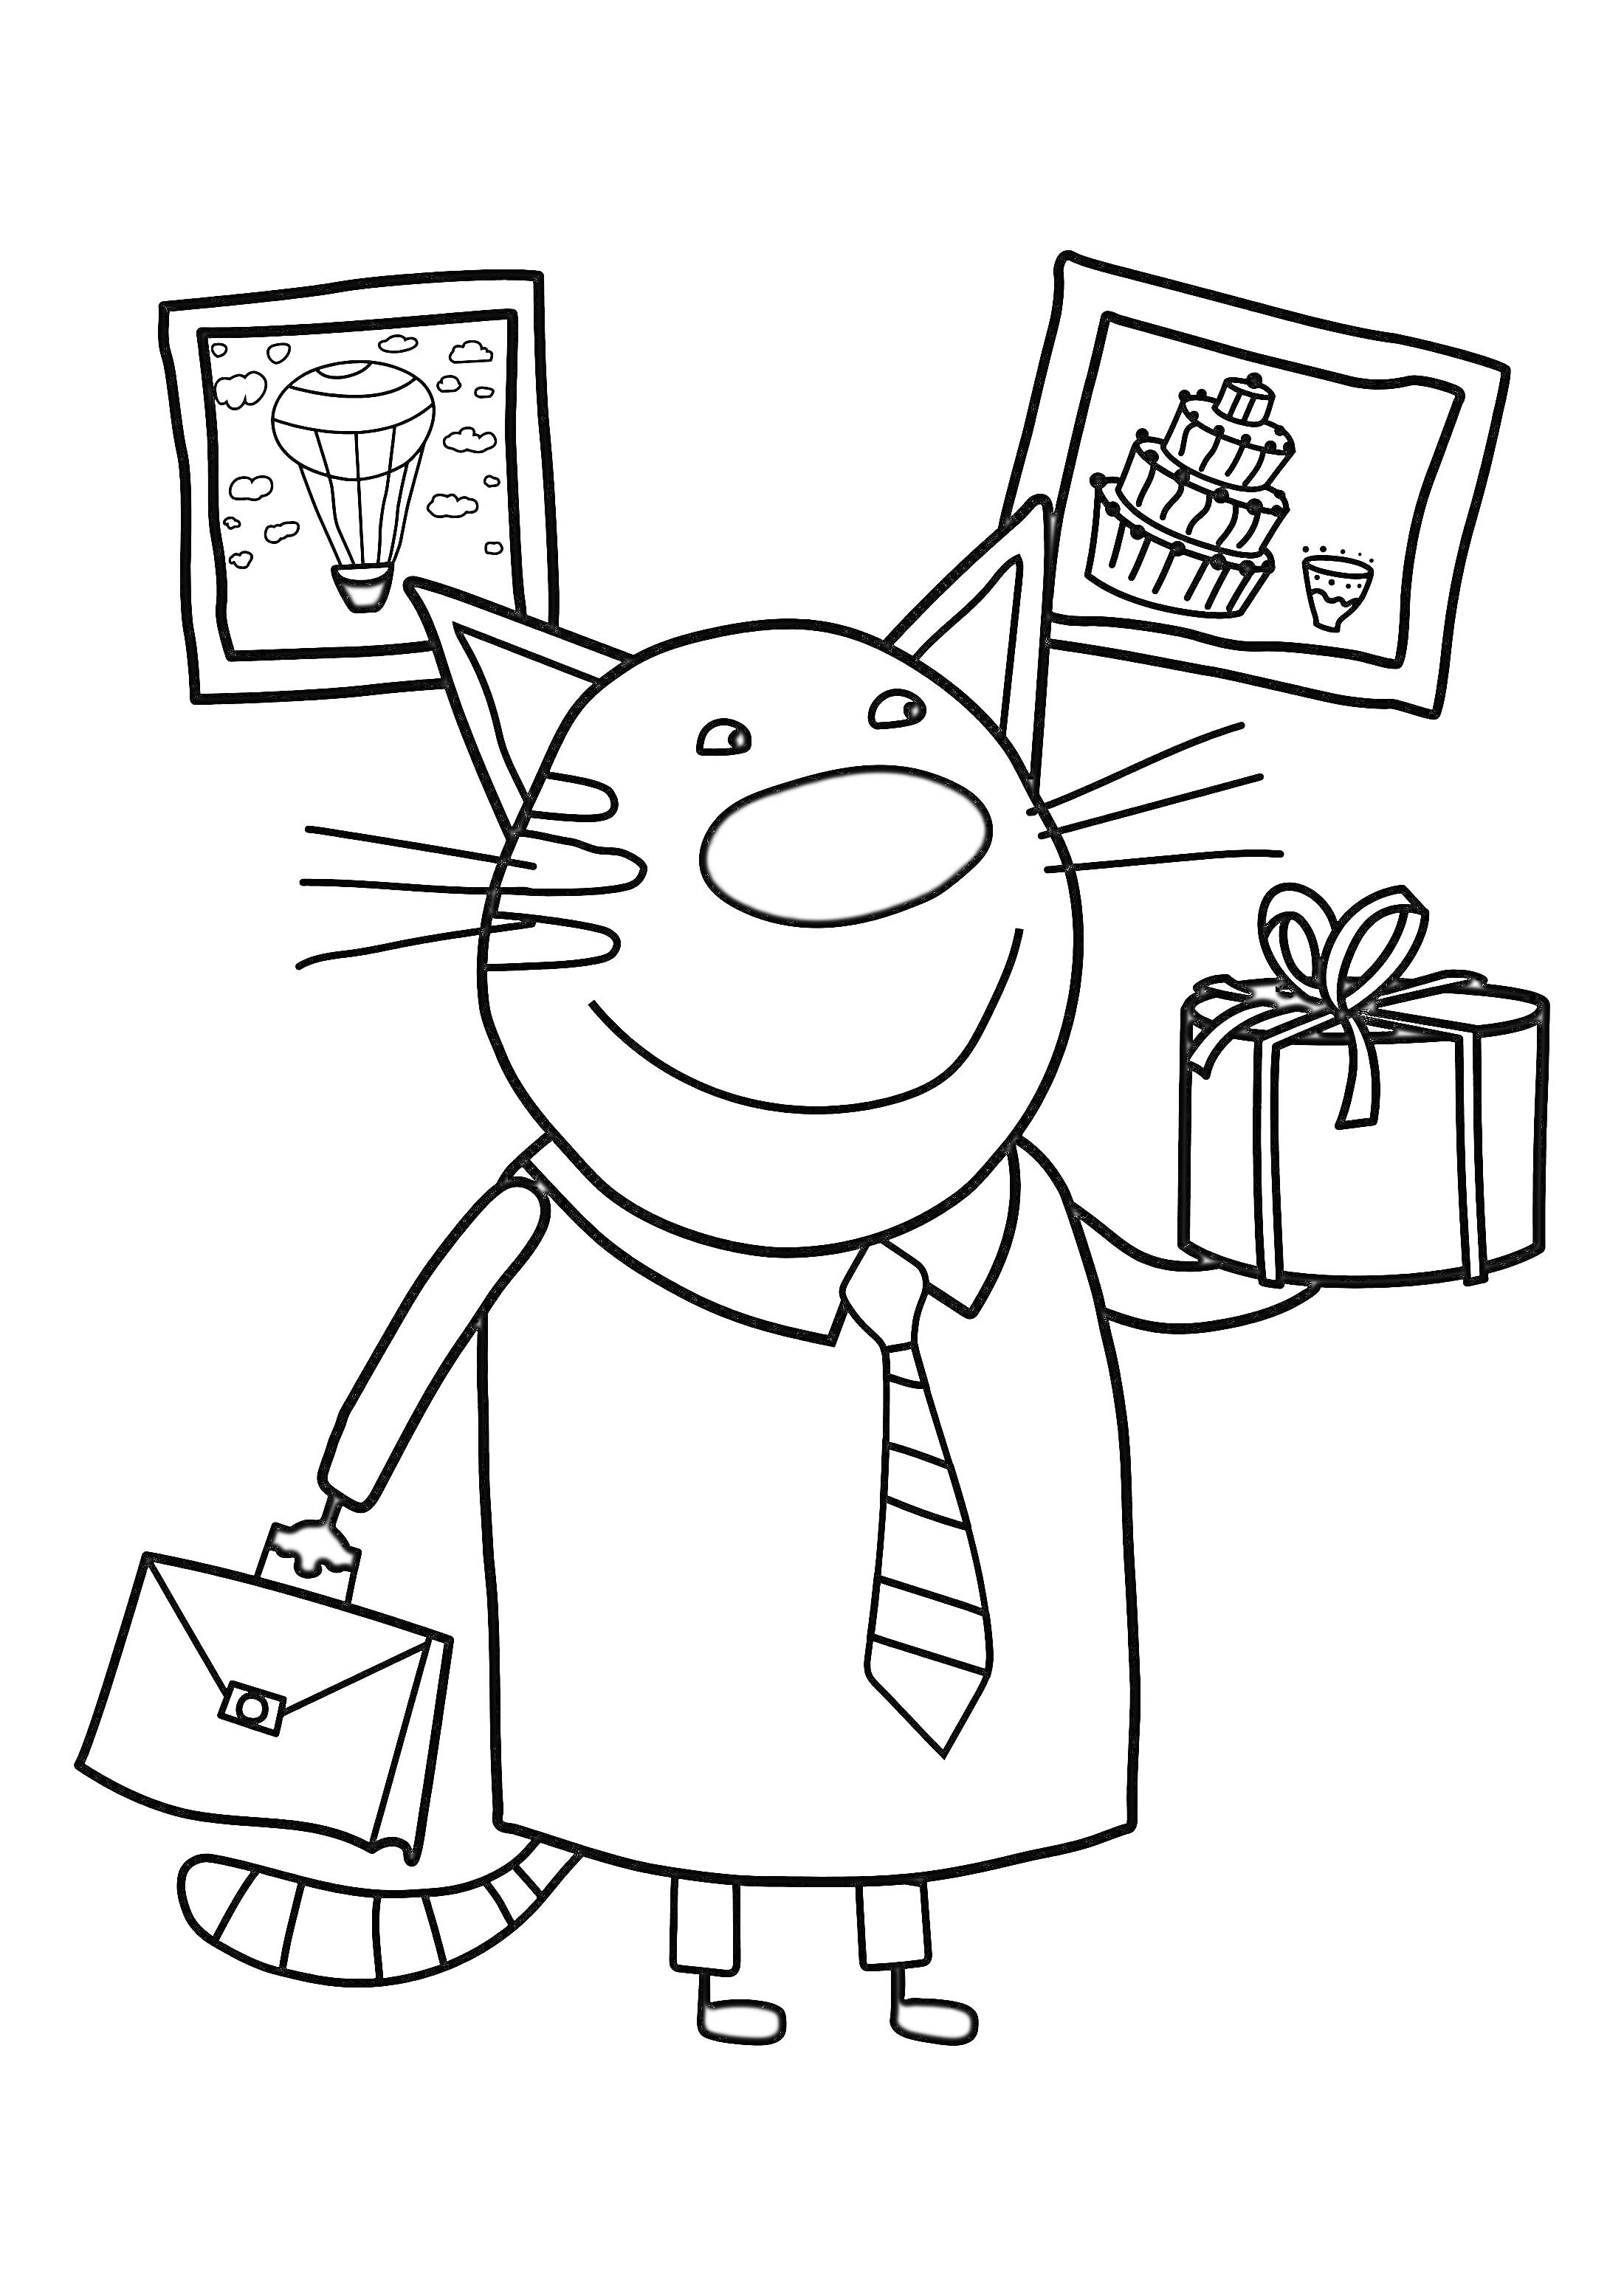 Кот в галстуке с подарком и портфелем на фоне картин с воздушным шаром и тортом